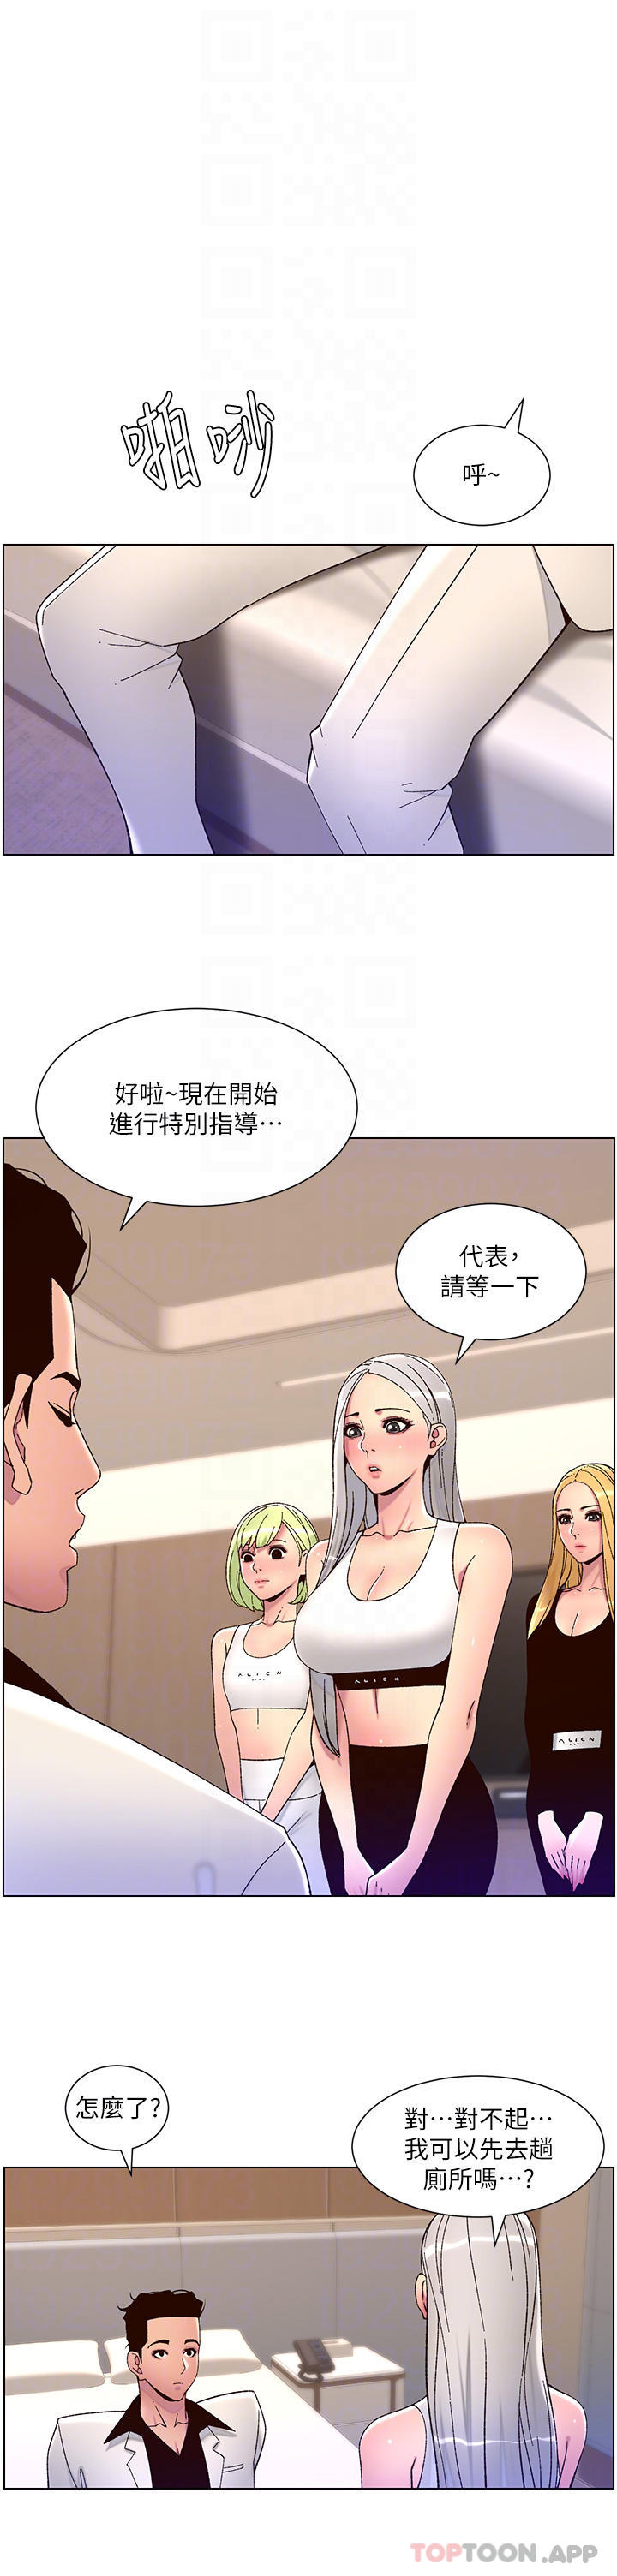 韩国污漫画 帝王App 第61话-想红就给我脱 10